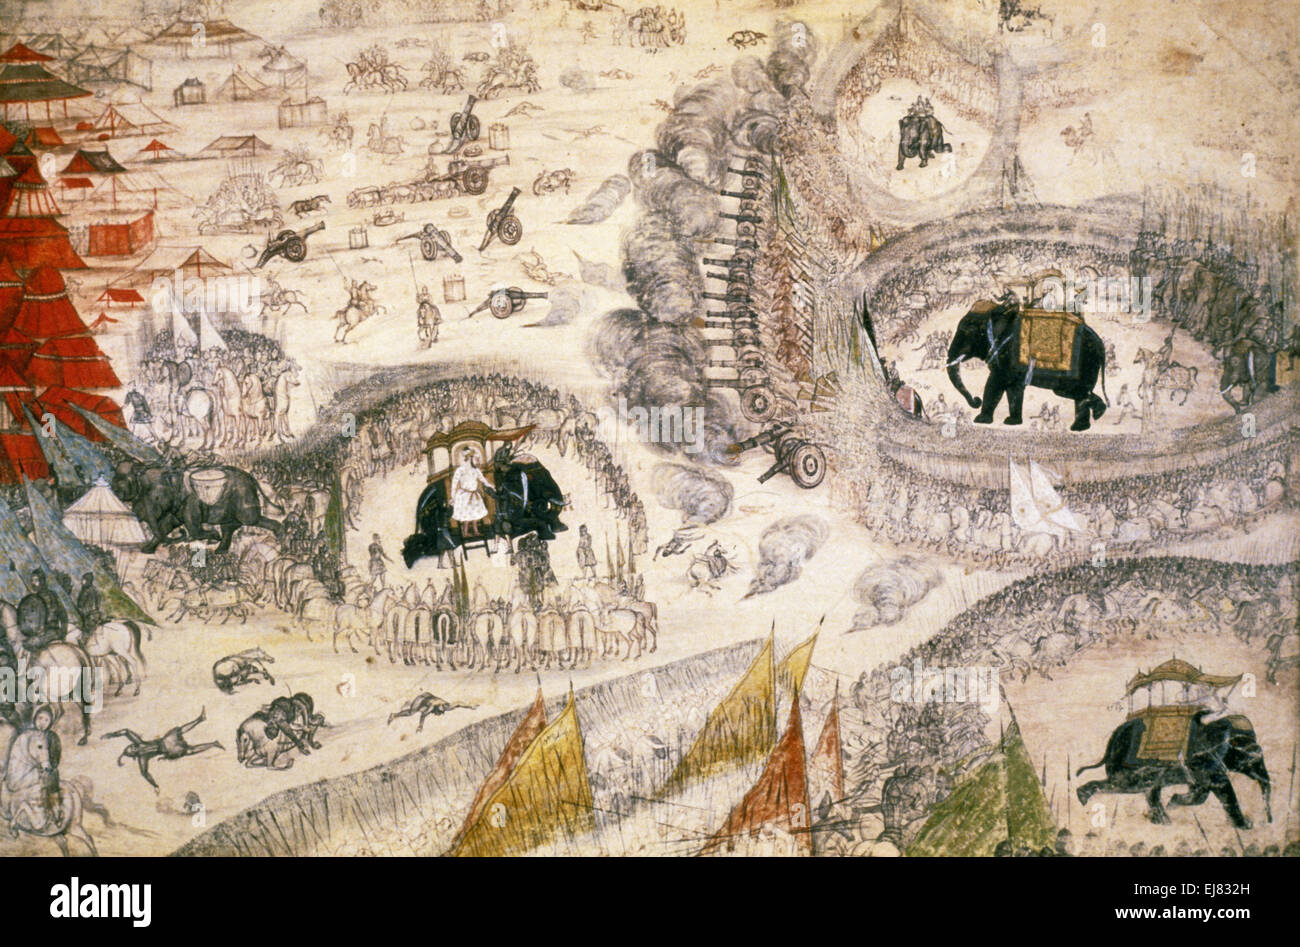 Bataille entre Dara Shukoh et Alamgir. Peinture miniature moghole circa A.D. 1660 Inde Banque D'Images